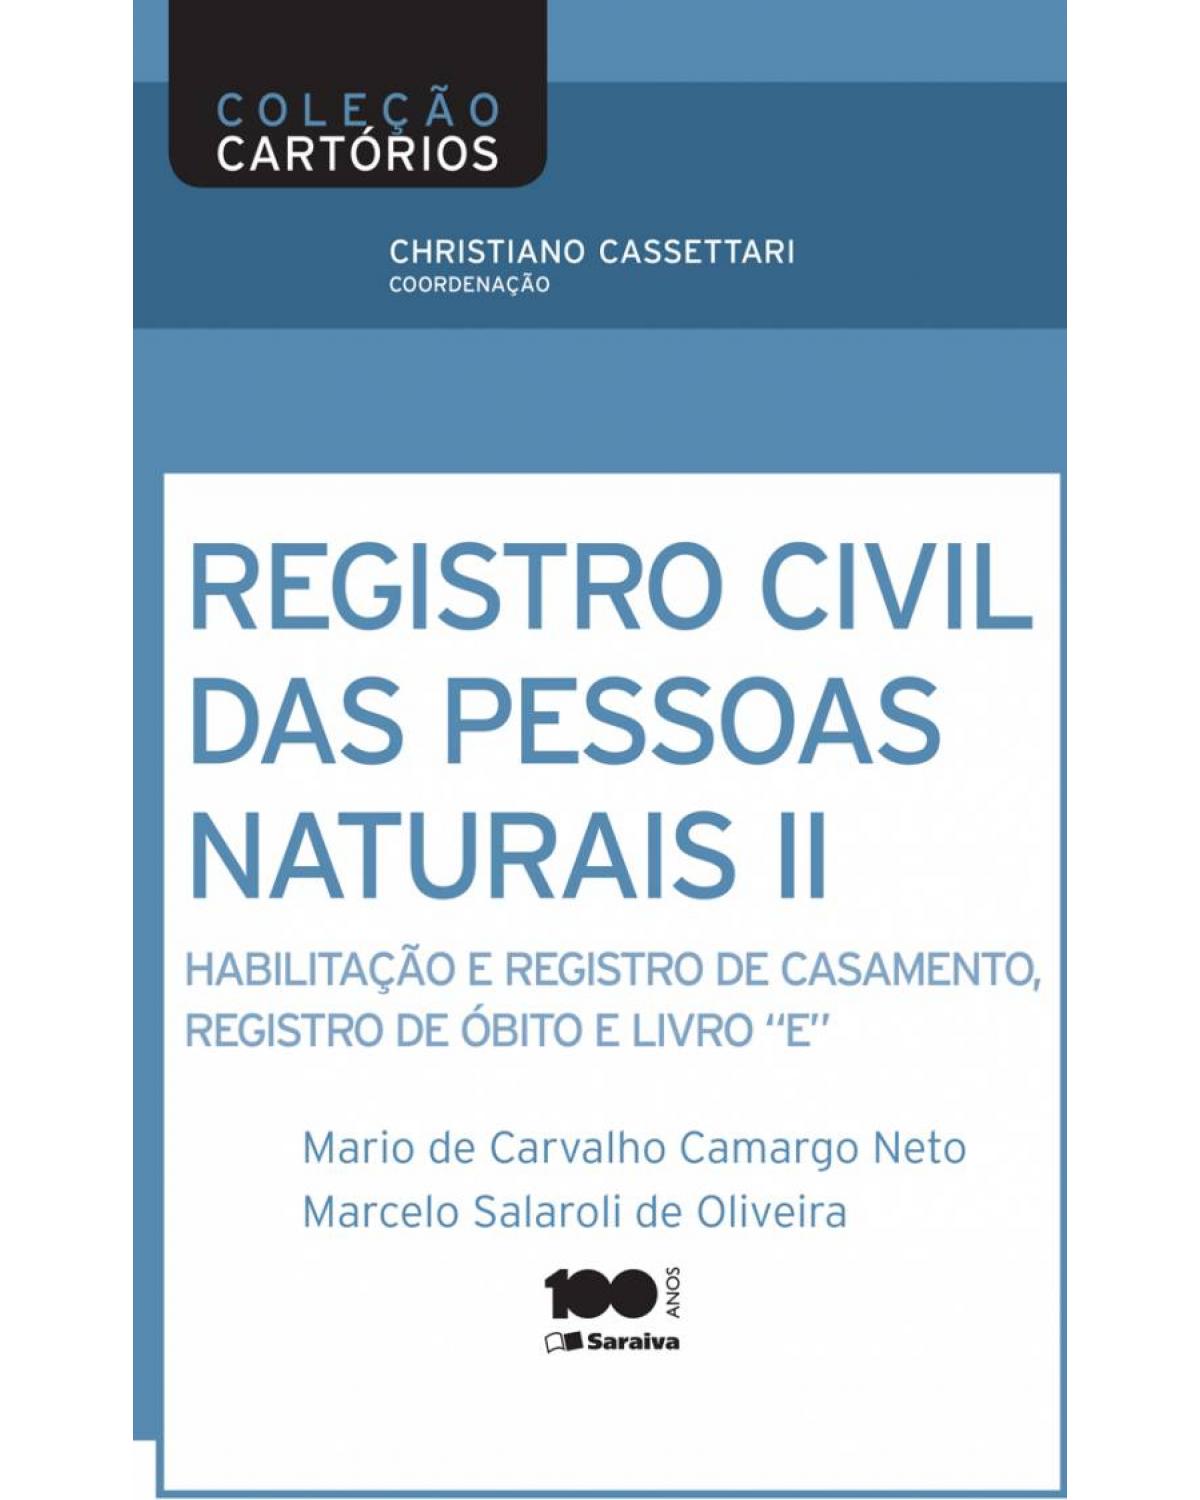 Registro civil de pessoas naturais II - habilitação e registro de casamento, registro de óbito e livro 